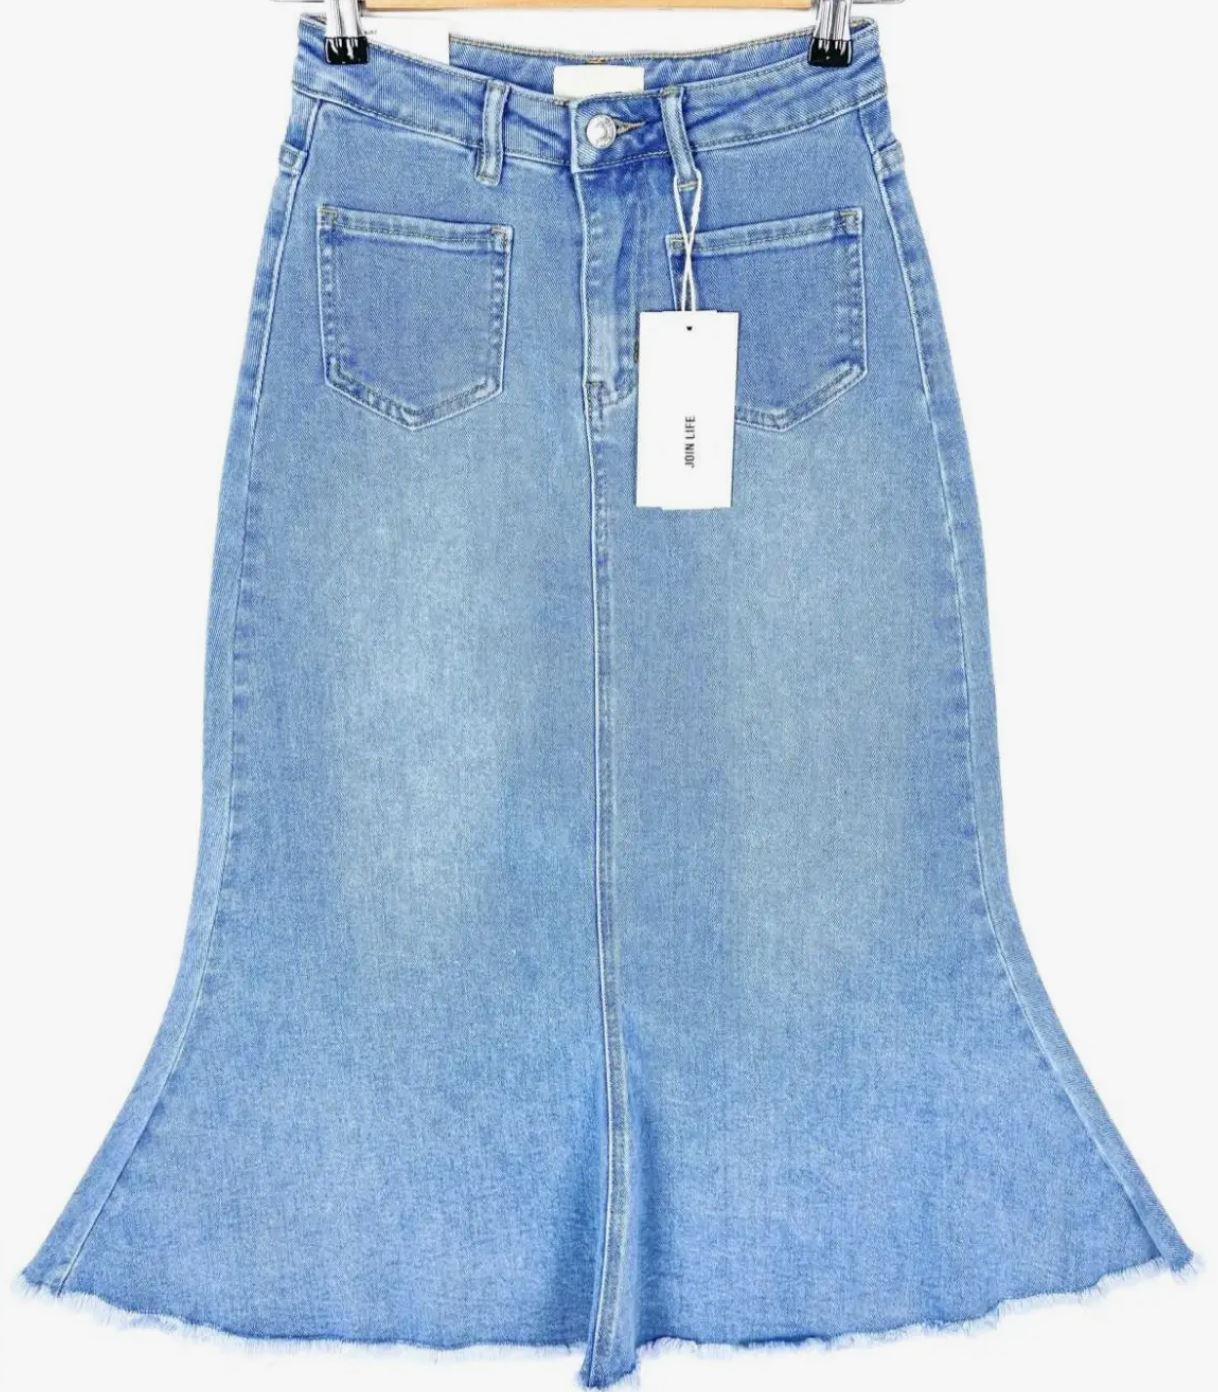 Fishtail Midi Skirt - Light blue